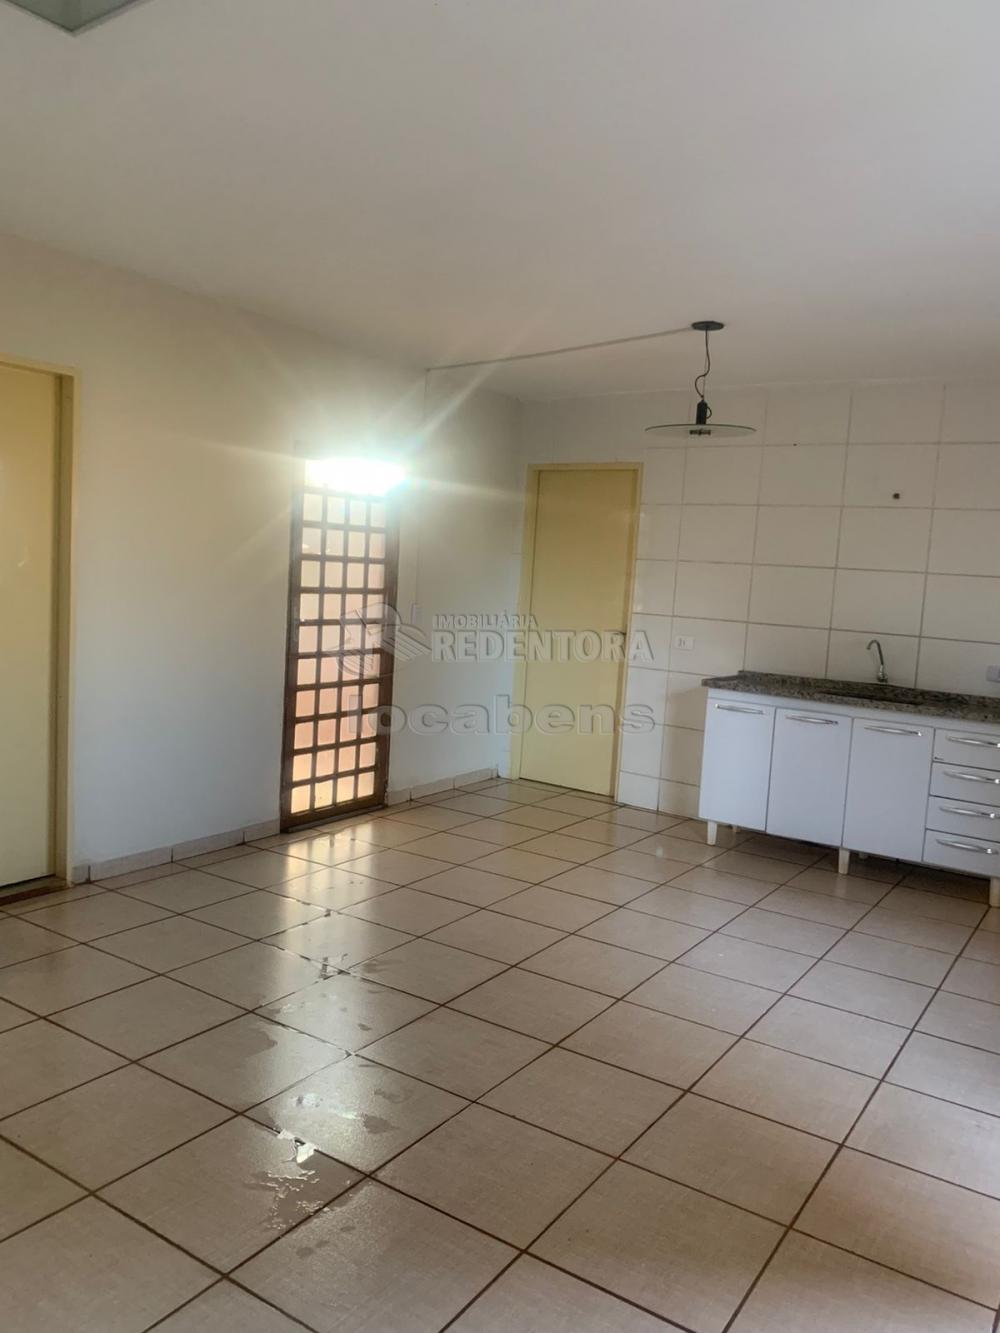 Alugar Casa / Padrão em São José do Rio Preto apenas R$ 670,00 - Foto 3